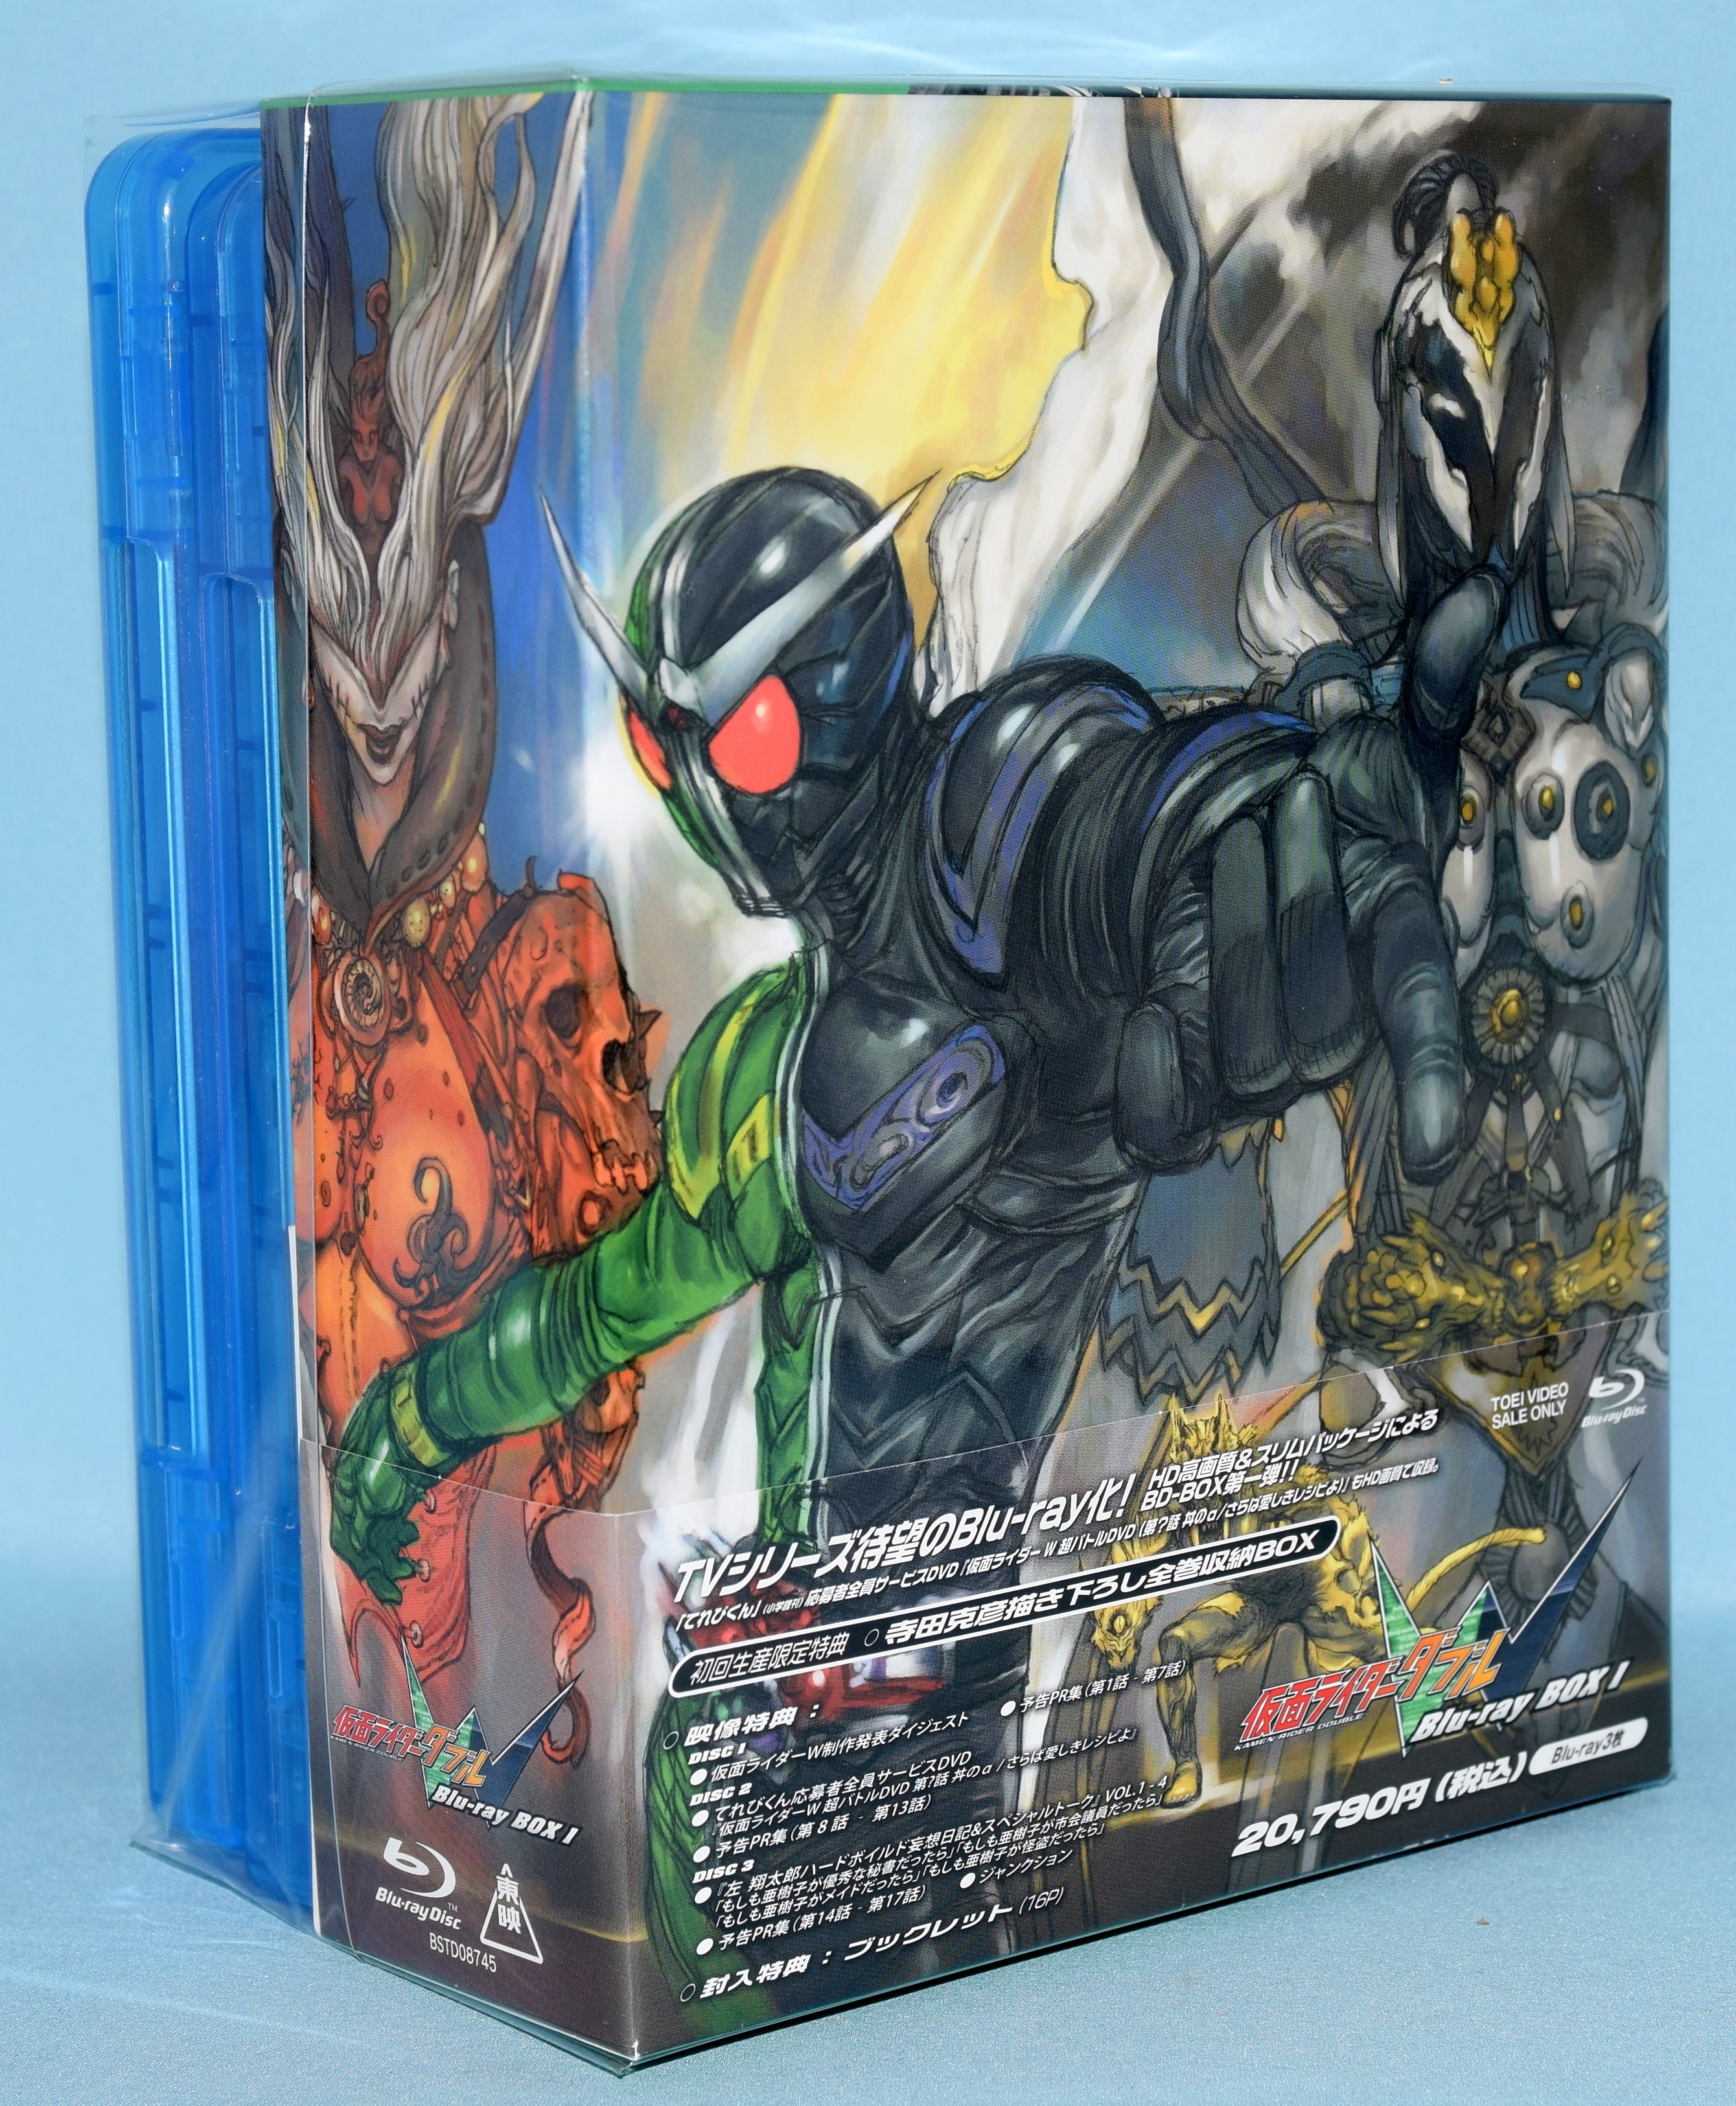 【美】仮面ライダーW Blu-ray全3巻セット ※初回限定収納BOX付き